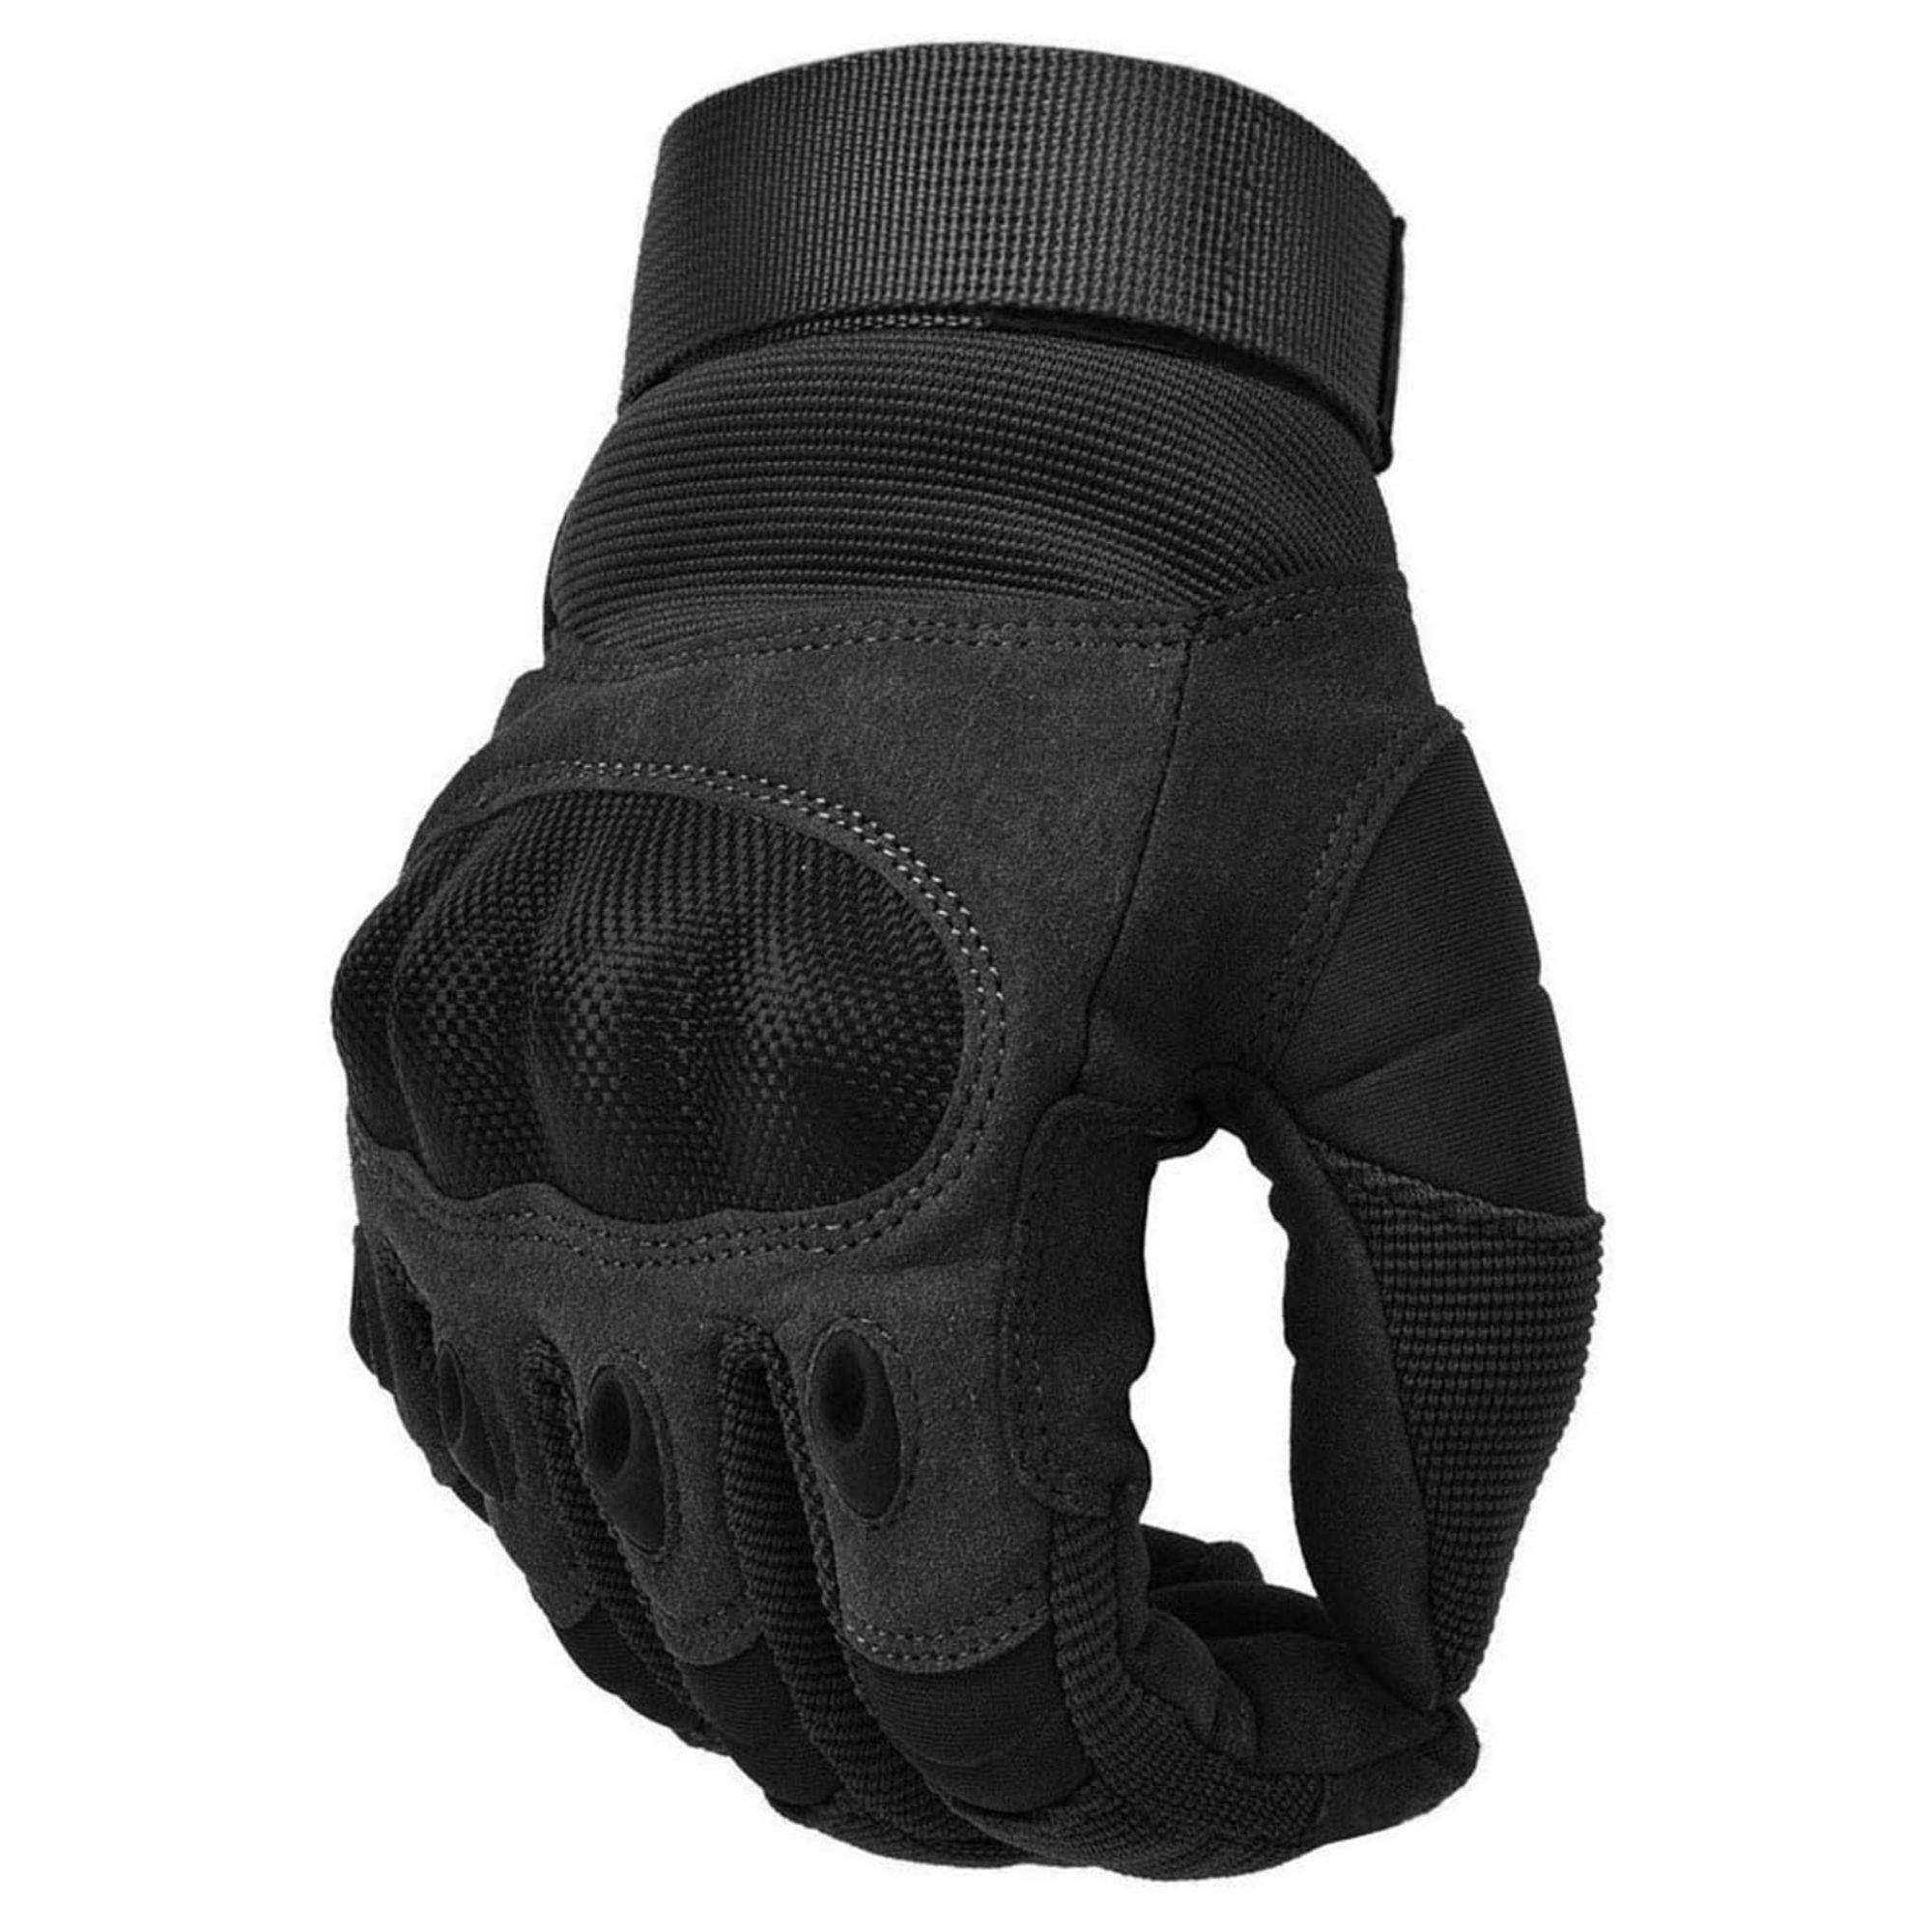 Repetiràs la compra d'aquests guants de moto per la seva qualitat i el seu preu: 12,90 € a Amazon